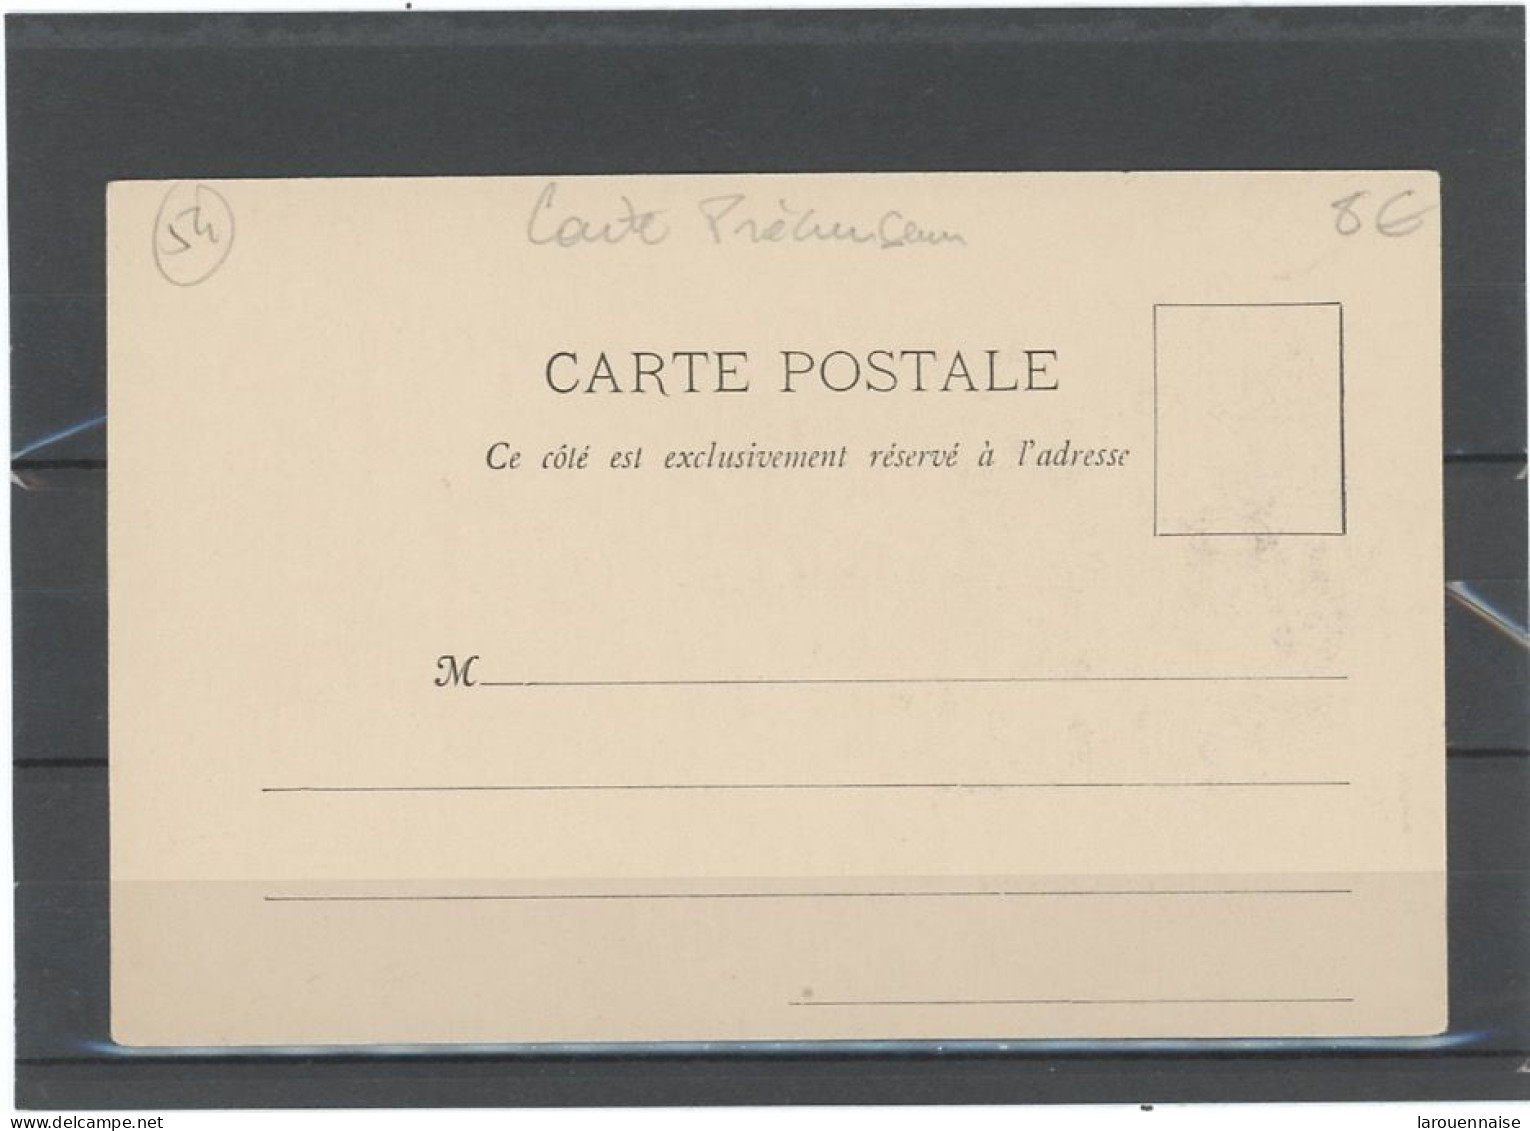 54 -TOUL LE 189 . -CARTE PRECURSEUR- HOTEL DE VILLE - Toul